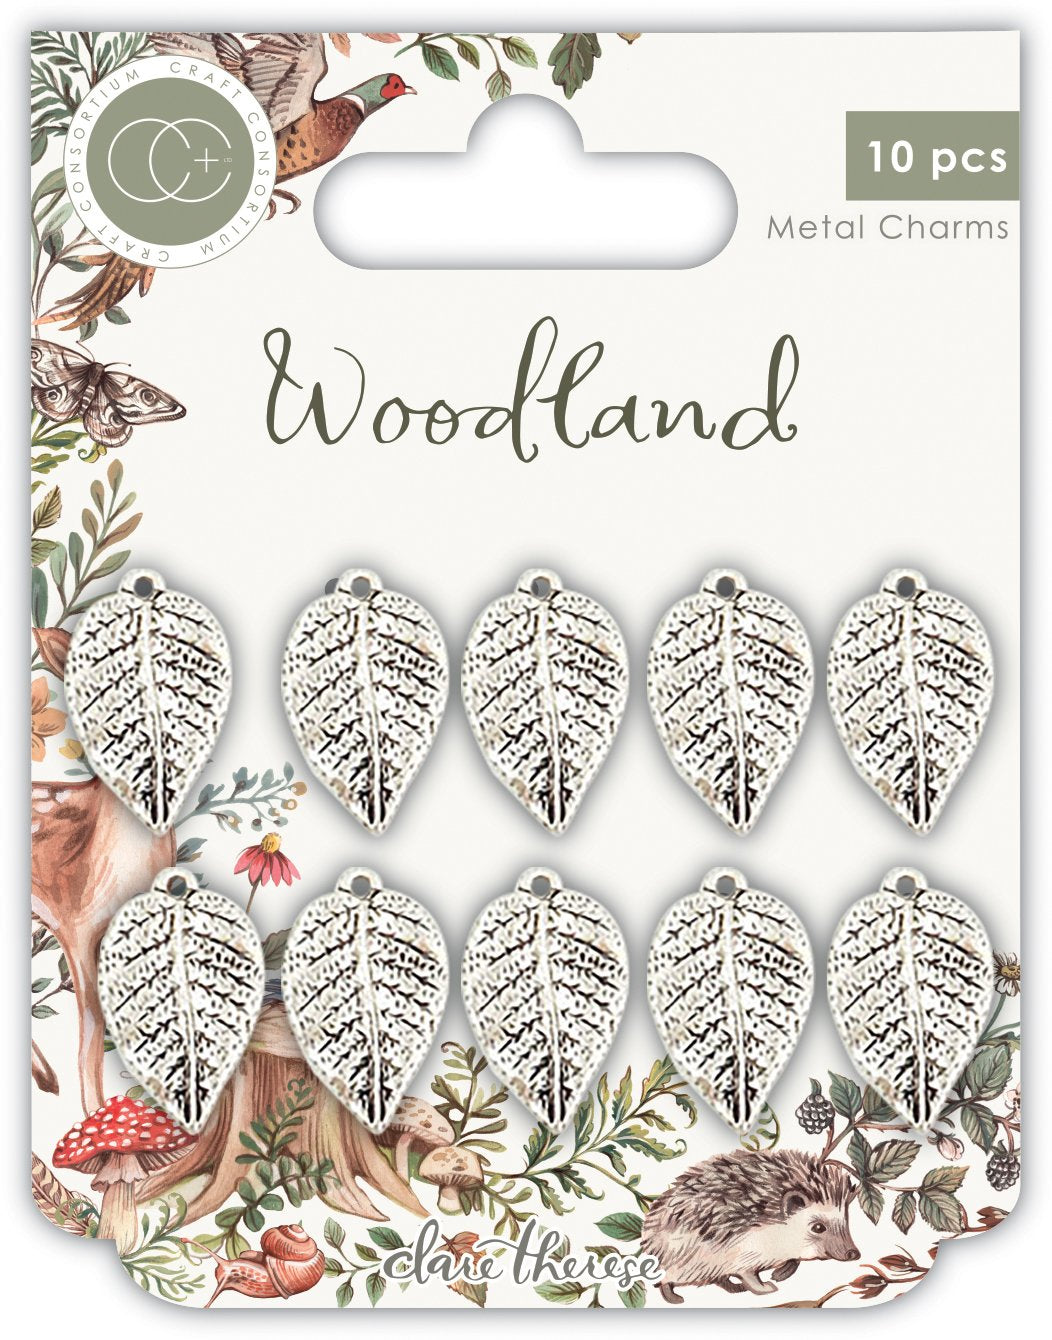 Woodland Silver Leaf Charms